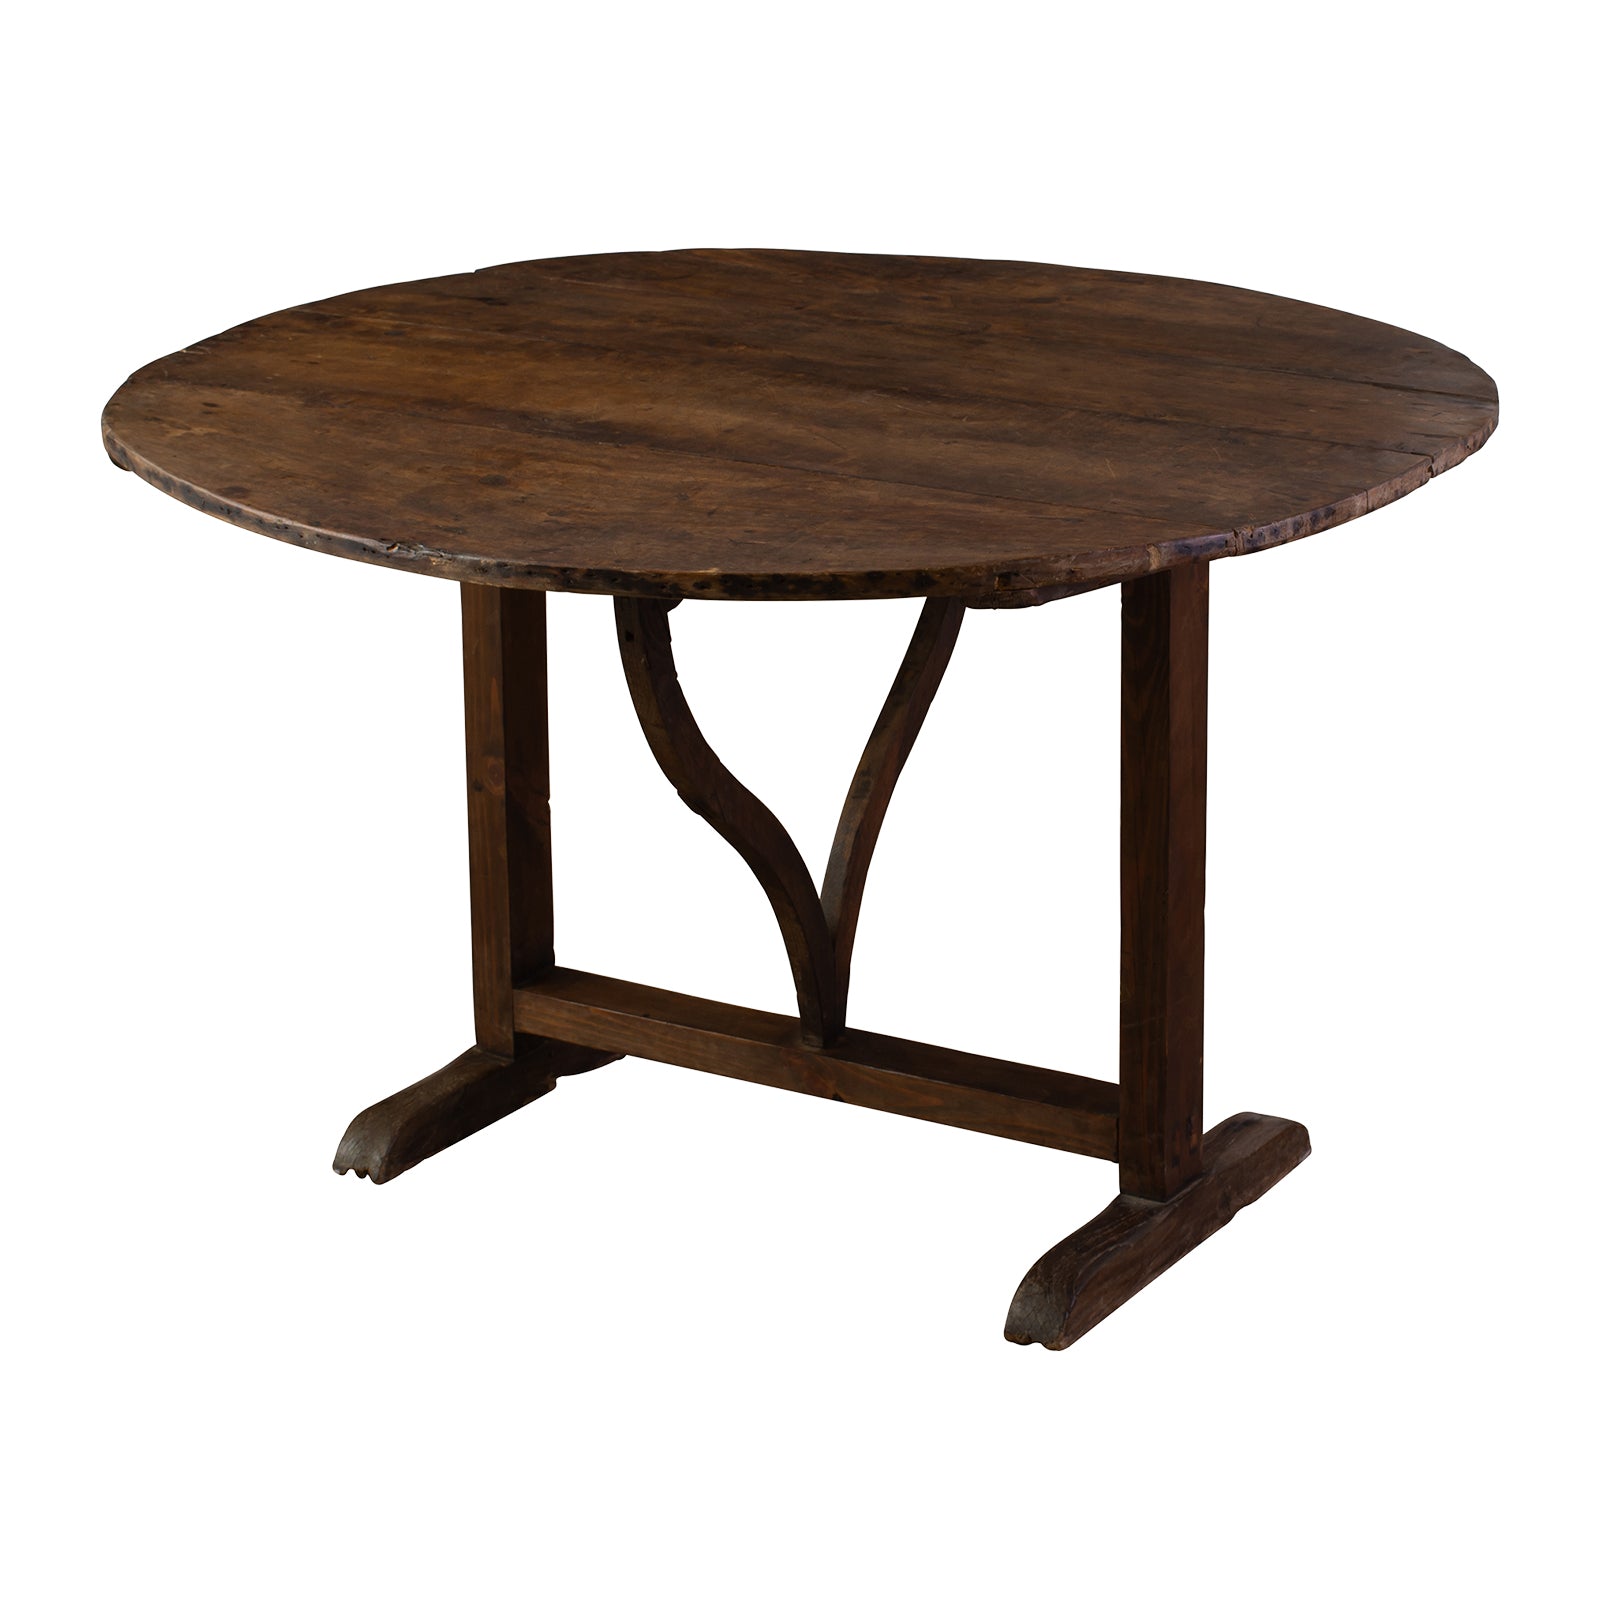 A Oak Vigneron Table